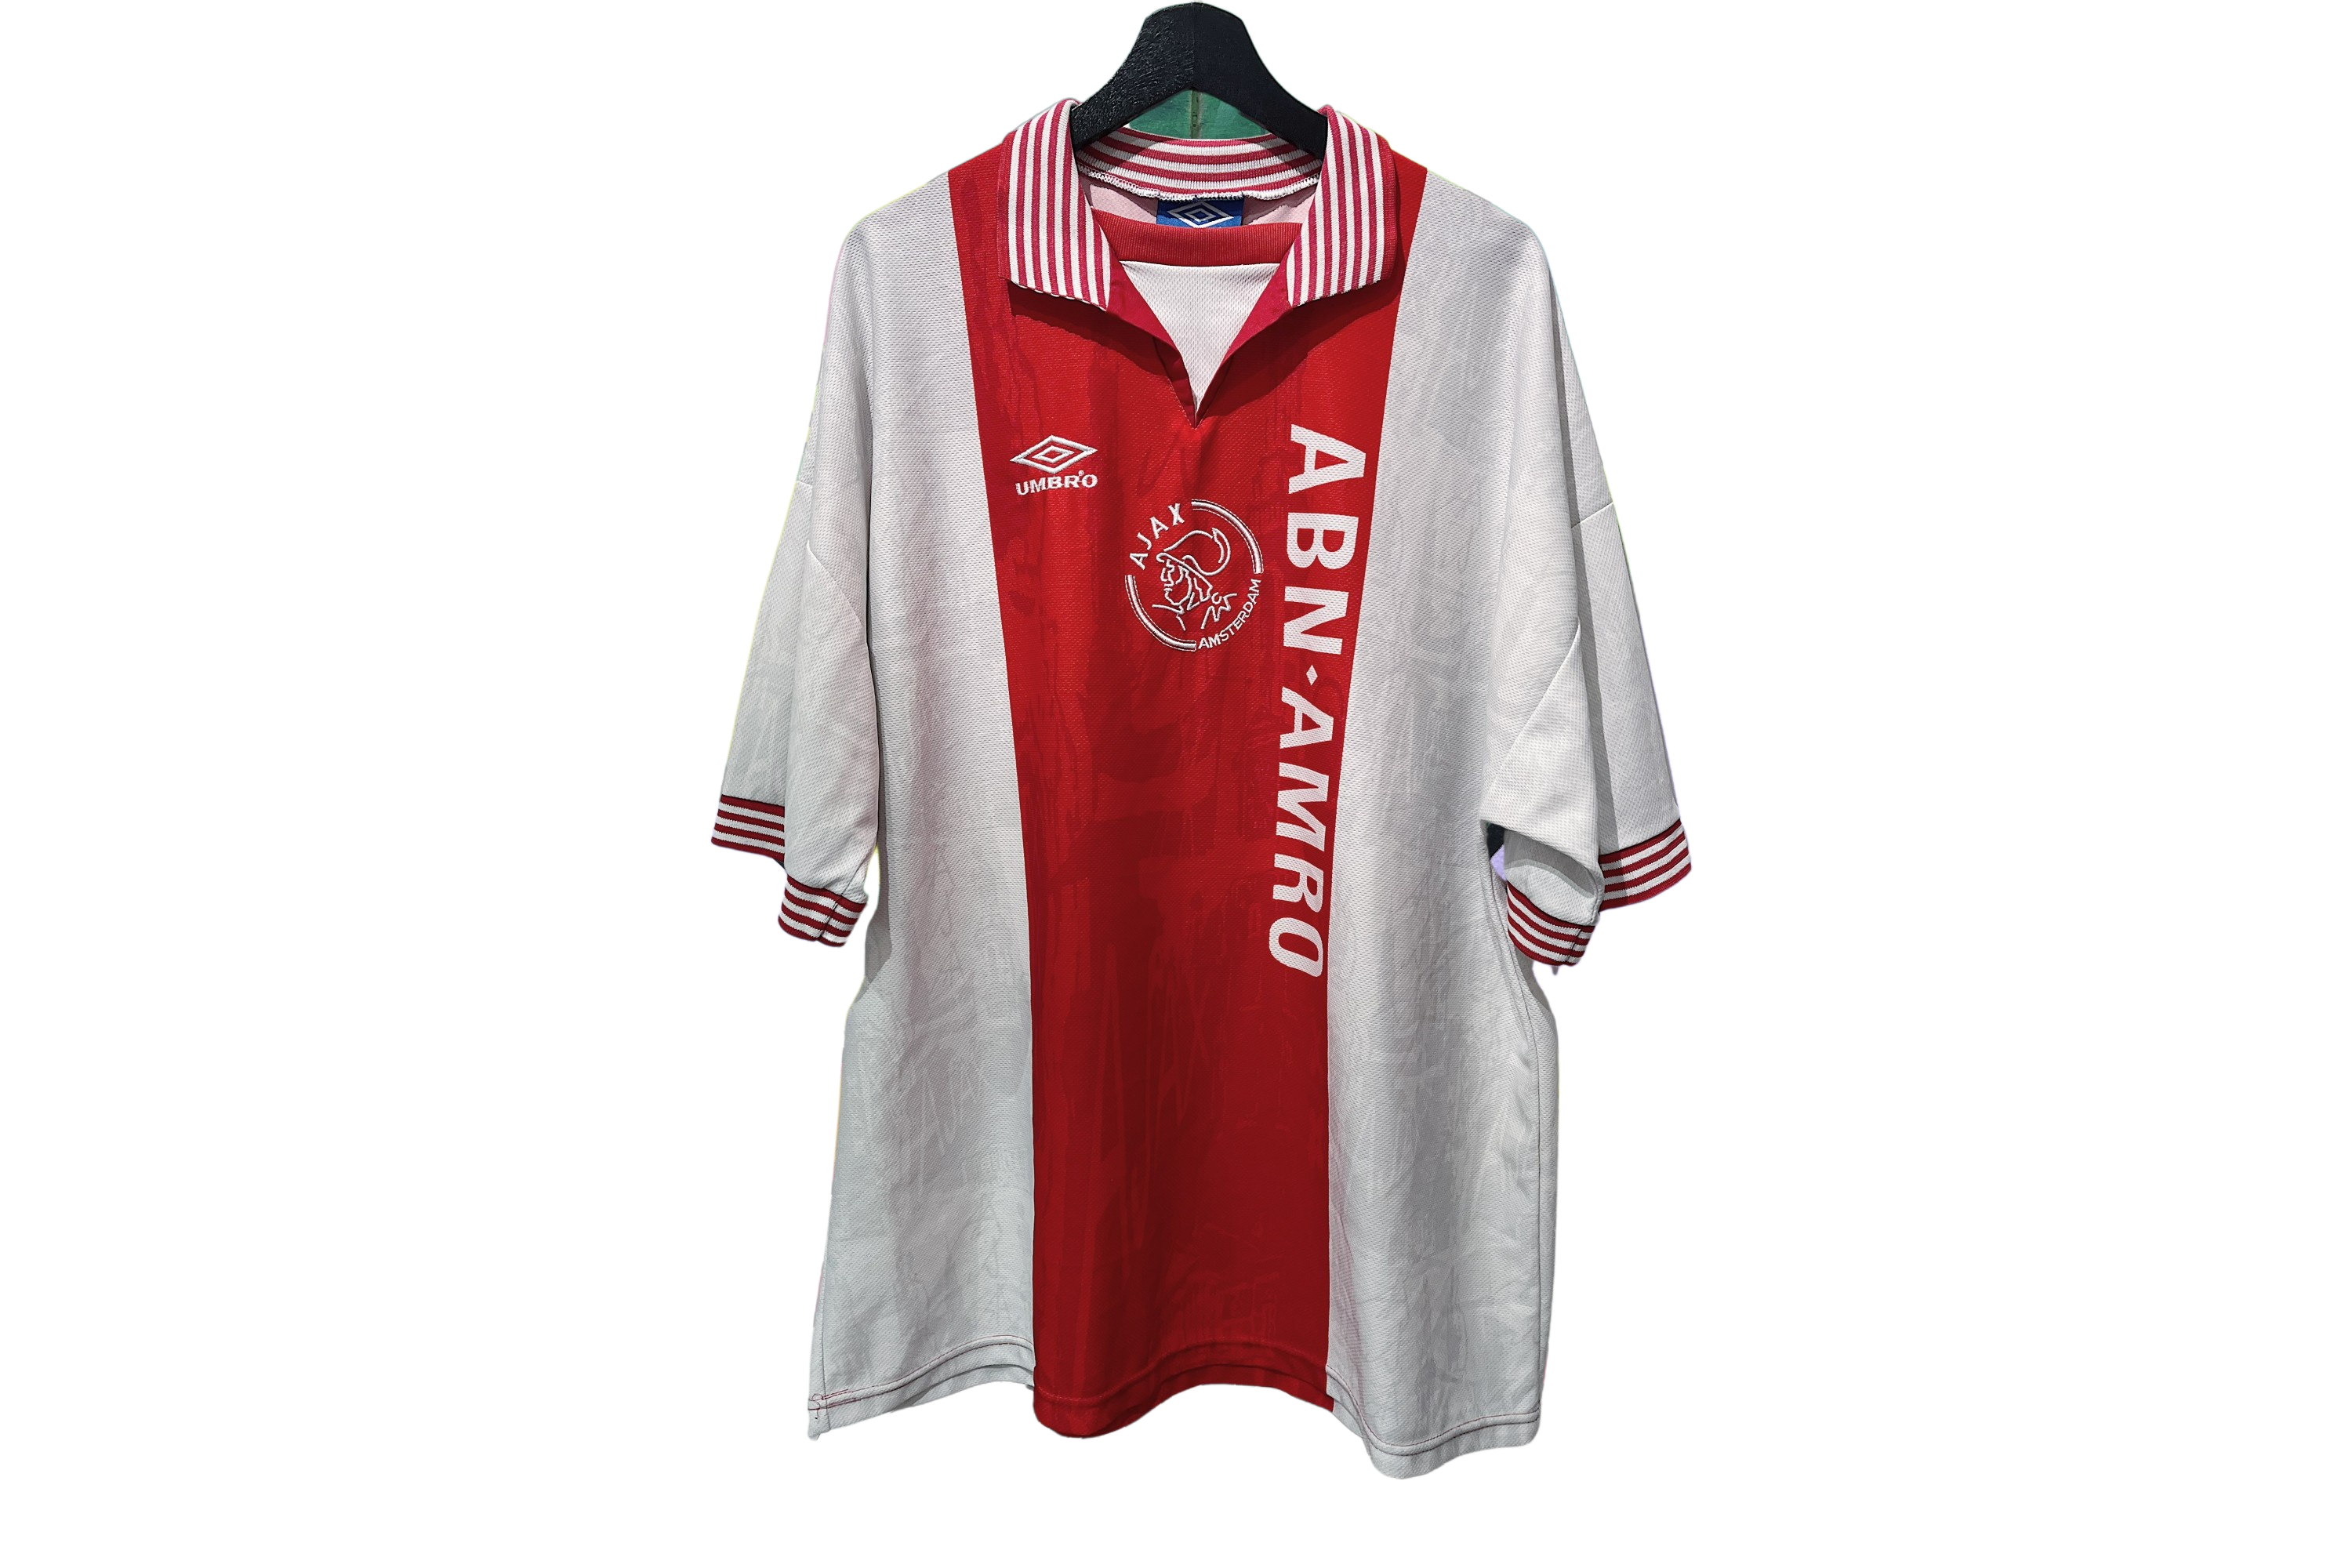 Umbro - Ajax 1996/97 Home Football Shirt